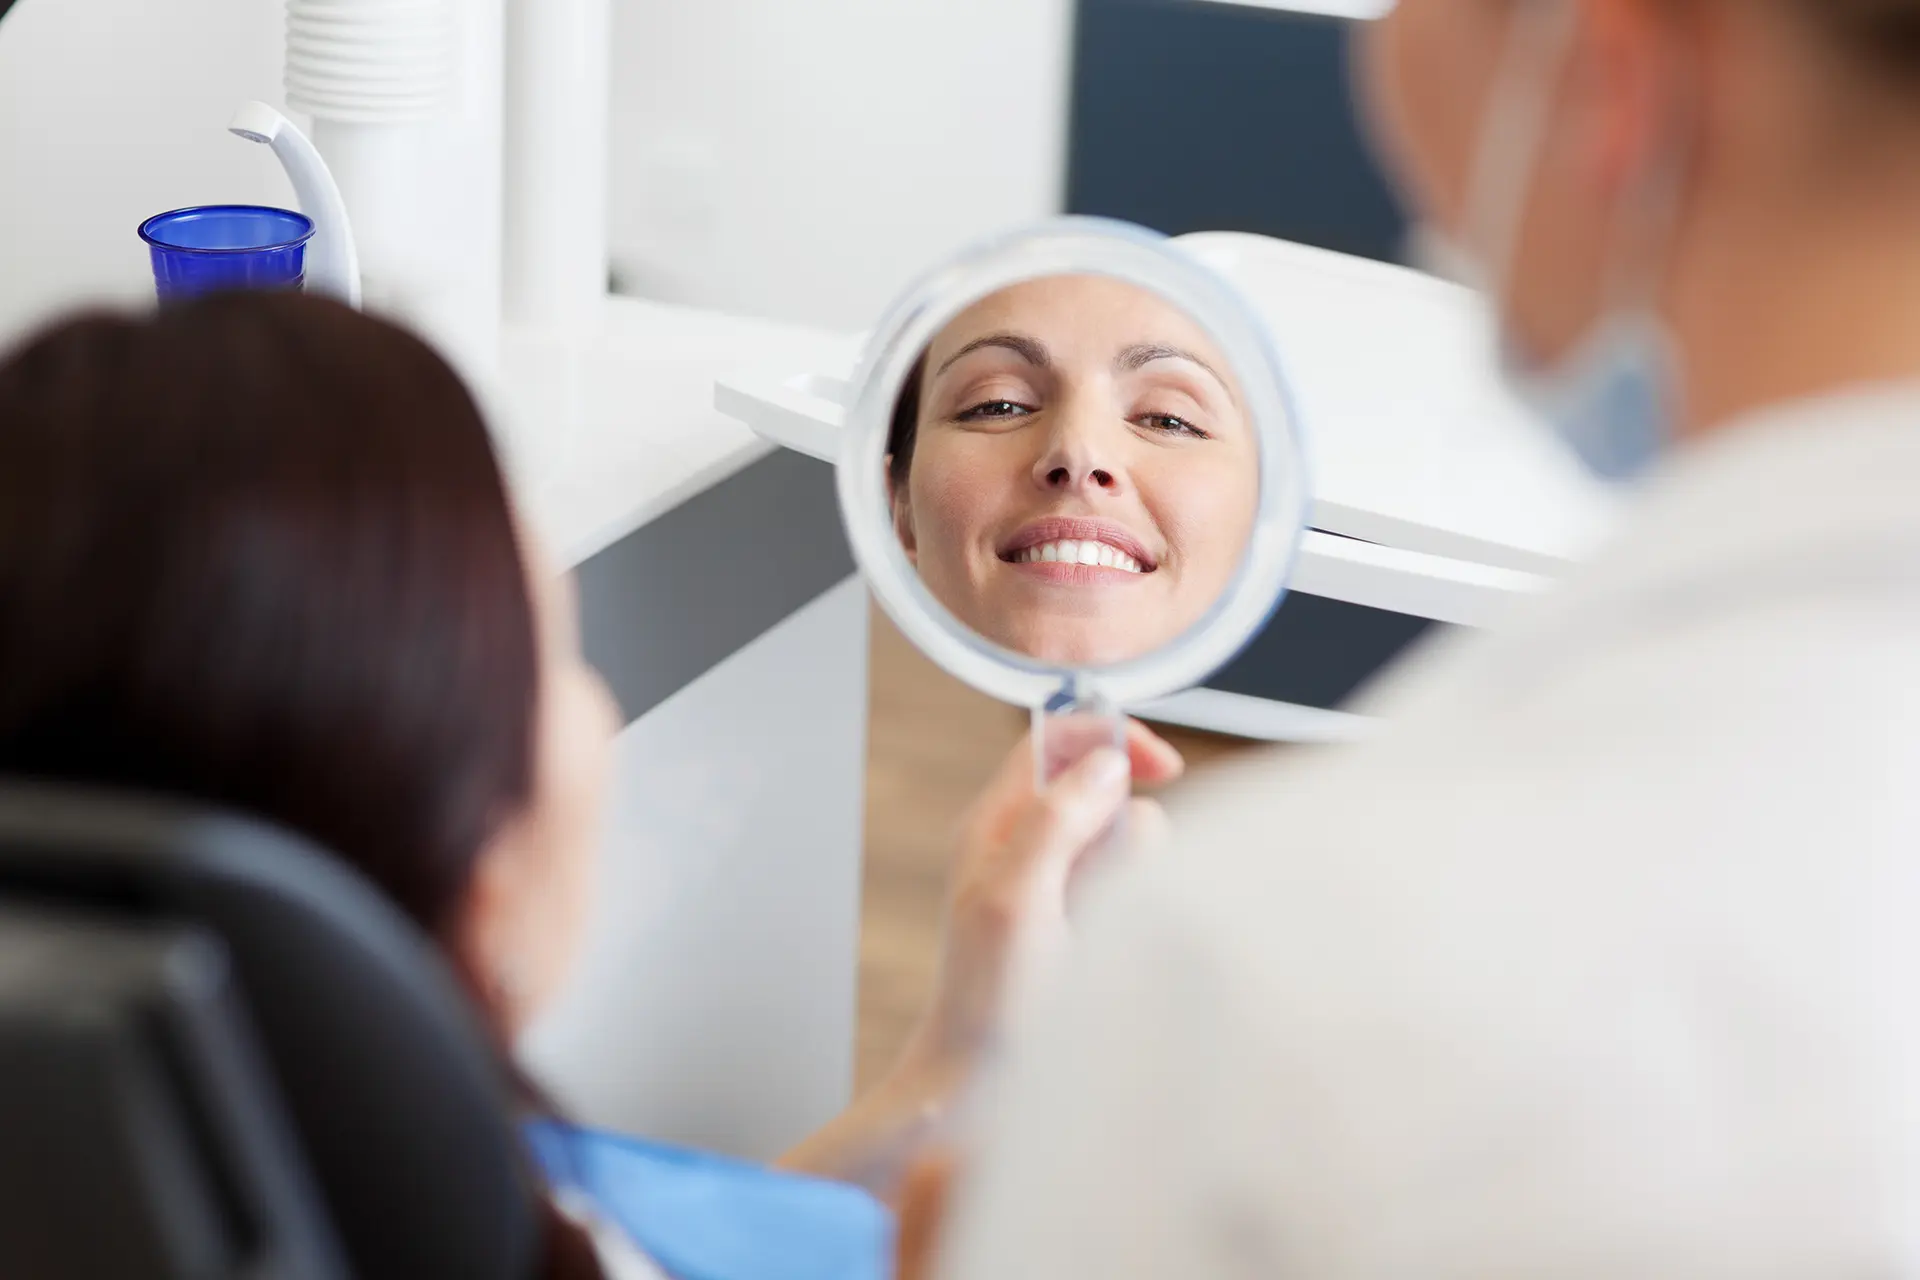 Patientin in Zahnarztpraxis begutachtet Zähne im Handspiegel, im Spiegel sieht man sie lächeln (Symbolbild für Ästhetische Zahnerhaltung im Frontbereich, Kronen und Verblendungen)